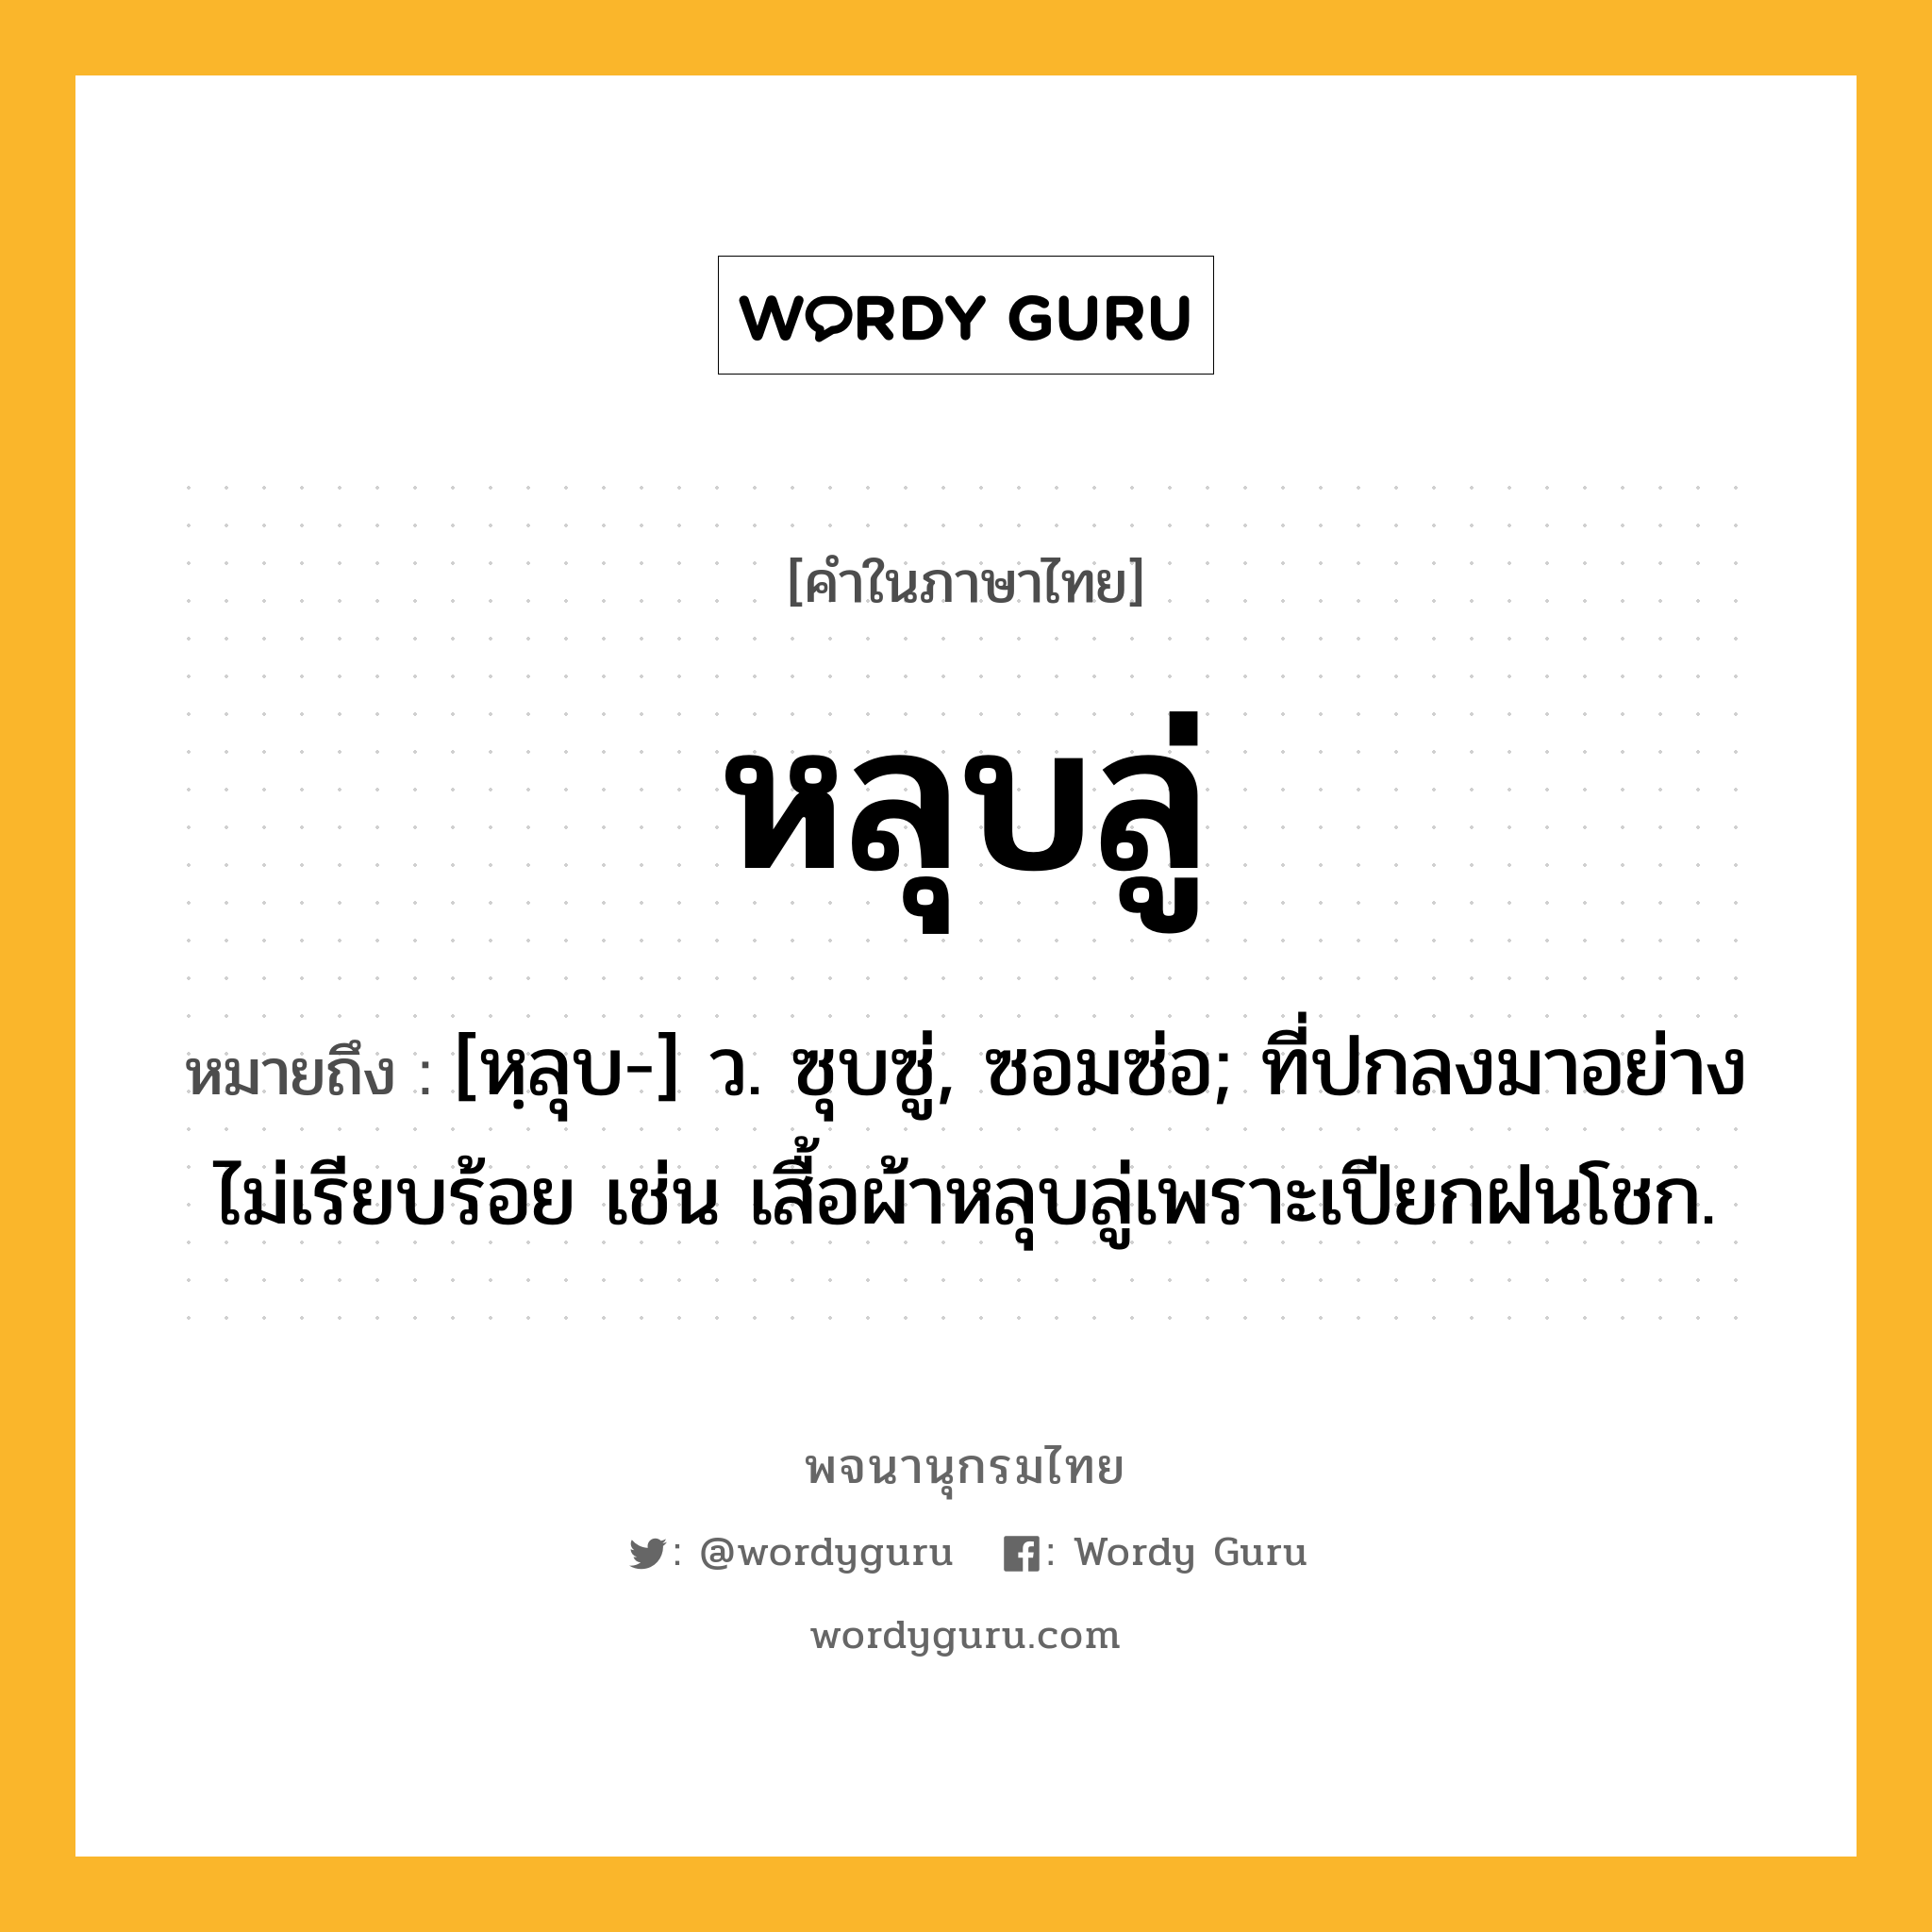 หลุบลู่ หมายถึงอะไร?, คำในภาษาไทย หลุบลู่ หมายถึง [หฺลุบ-] ว. ซุบซู่, ซอมซ่อ; ที่ปกลงมาอย่างไม่เรียบร้อย เช่น เสื้อผ้าหลุบลู่เพราะเปียกฝนโชก.